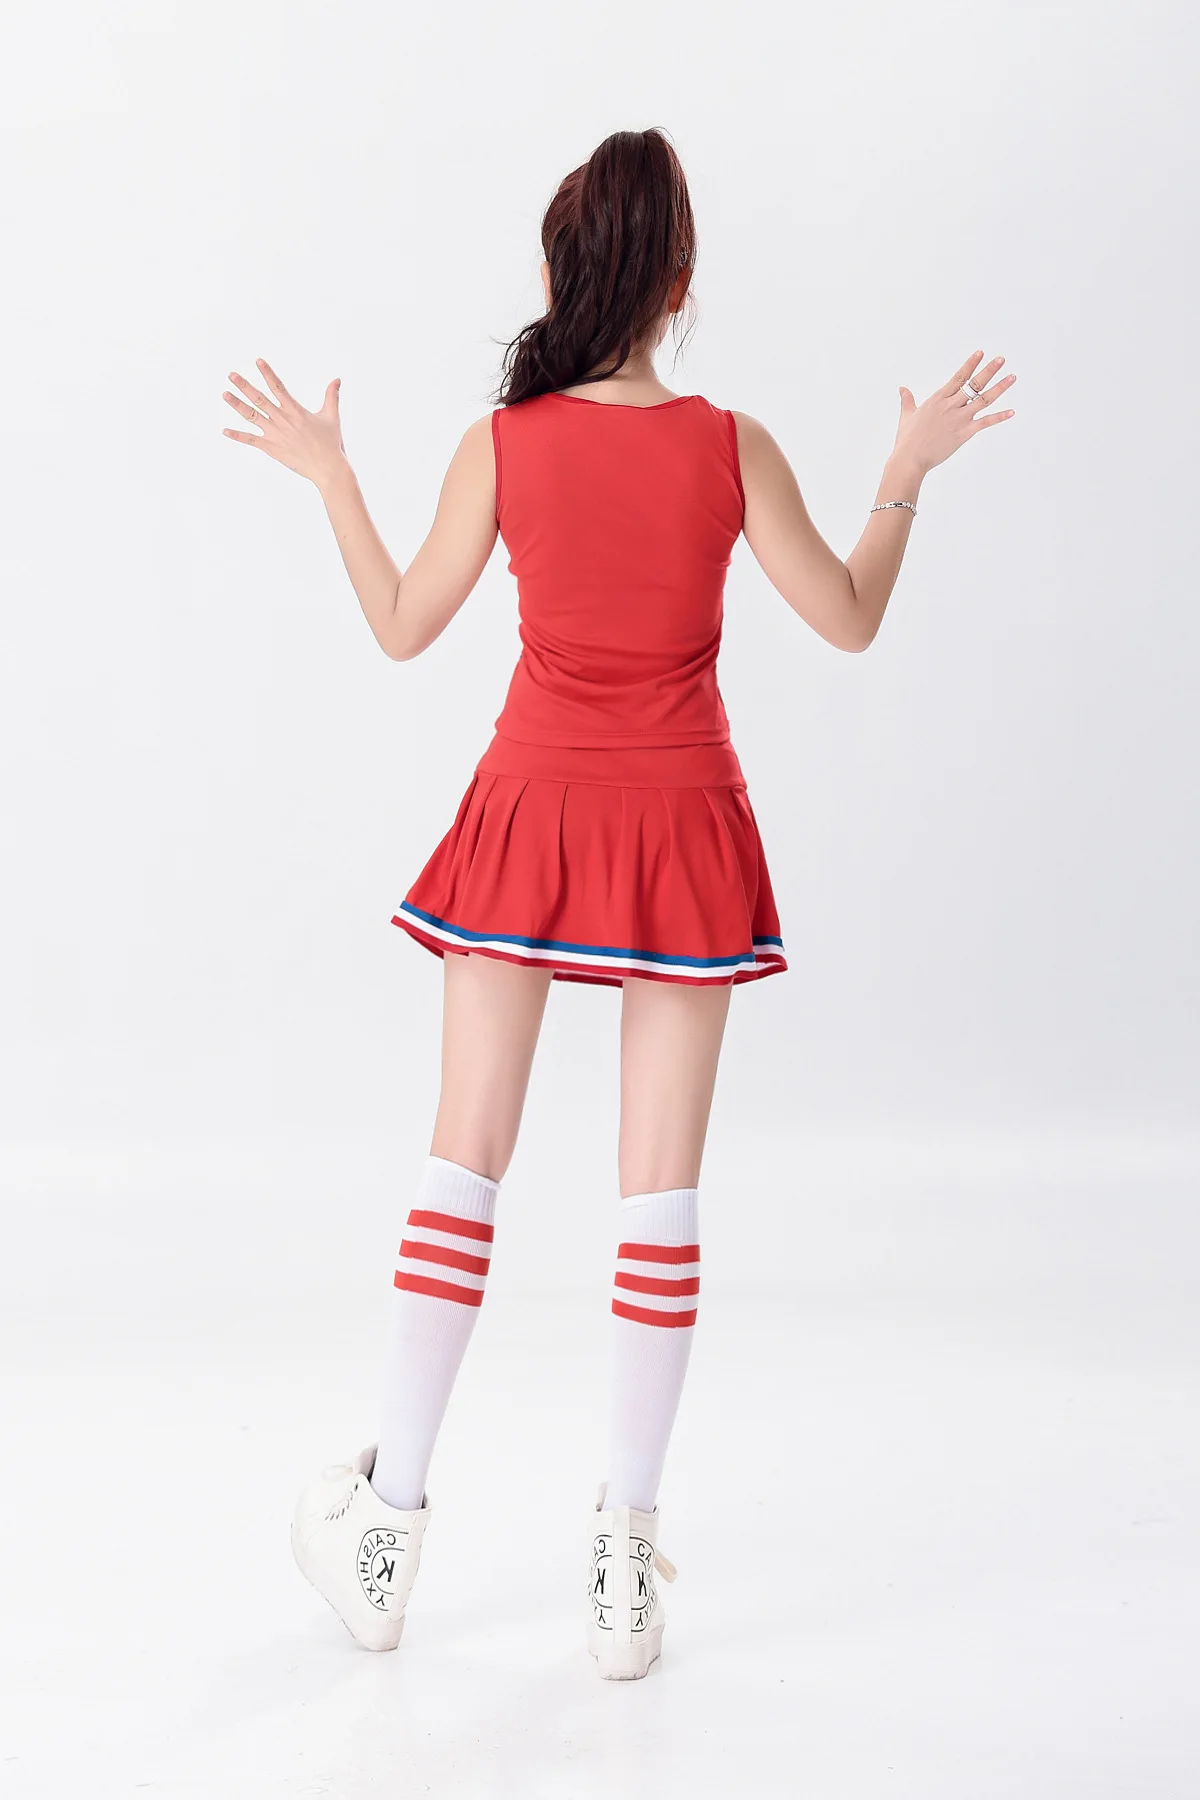 Бесплатные подарки: 2 шт. помпоны+ 1 носки) платье для Черлидинга Студенческая спортивная одежда для Черлидинга гимнастическая одежда для женщин и взрослых школьная форма